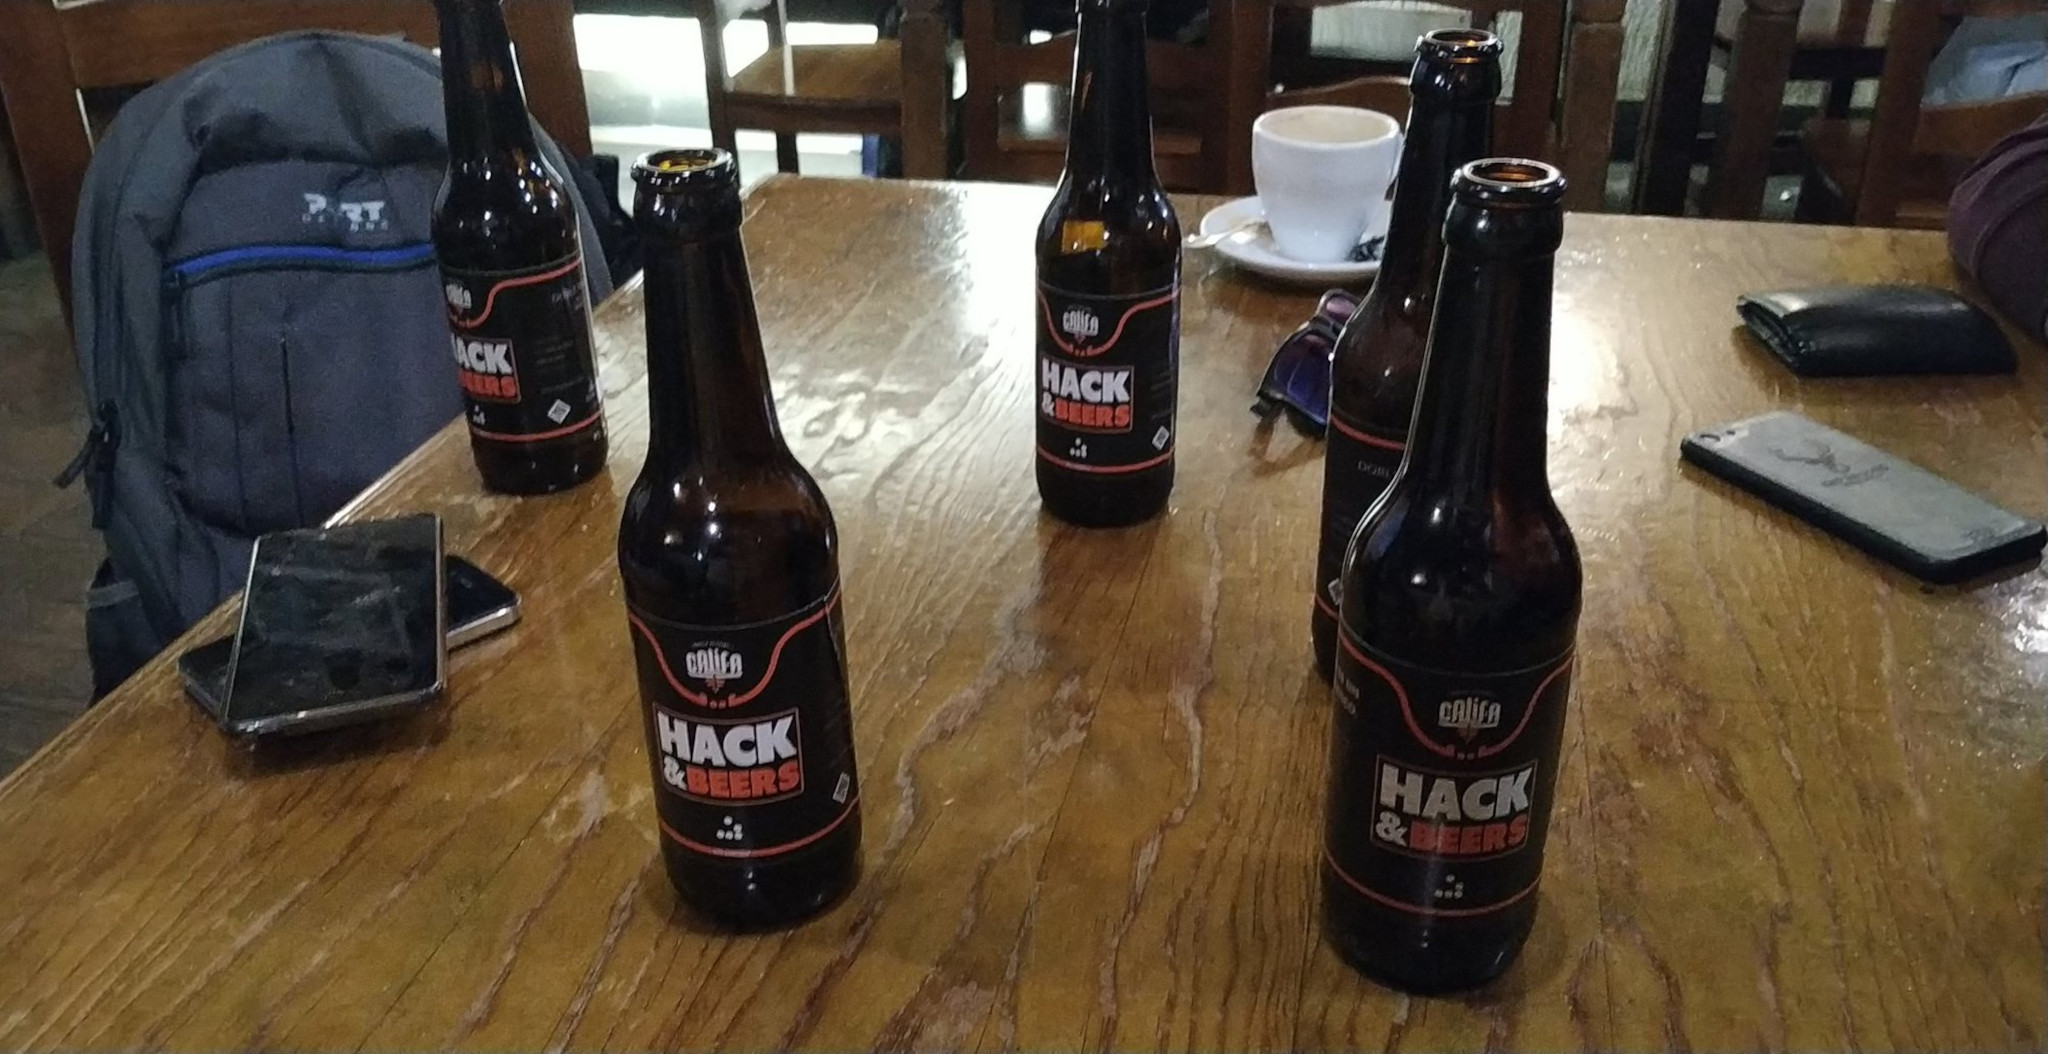 Hack & Beers previo a cualquiera de las JASYP.